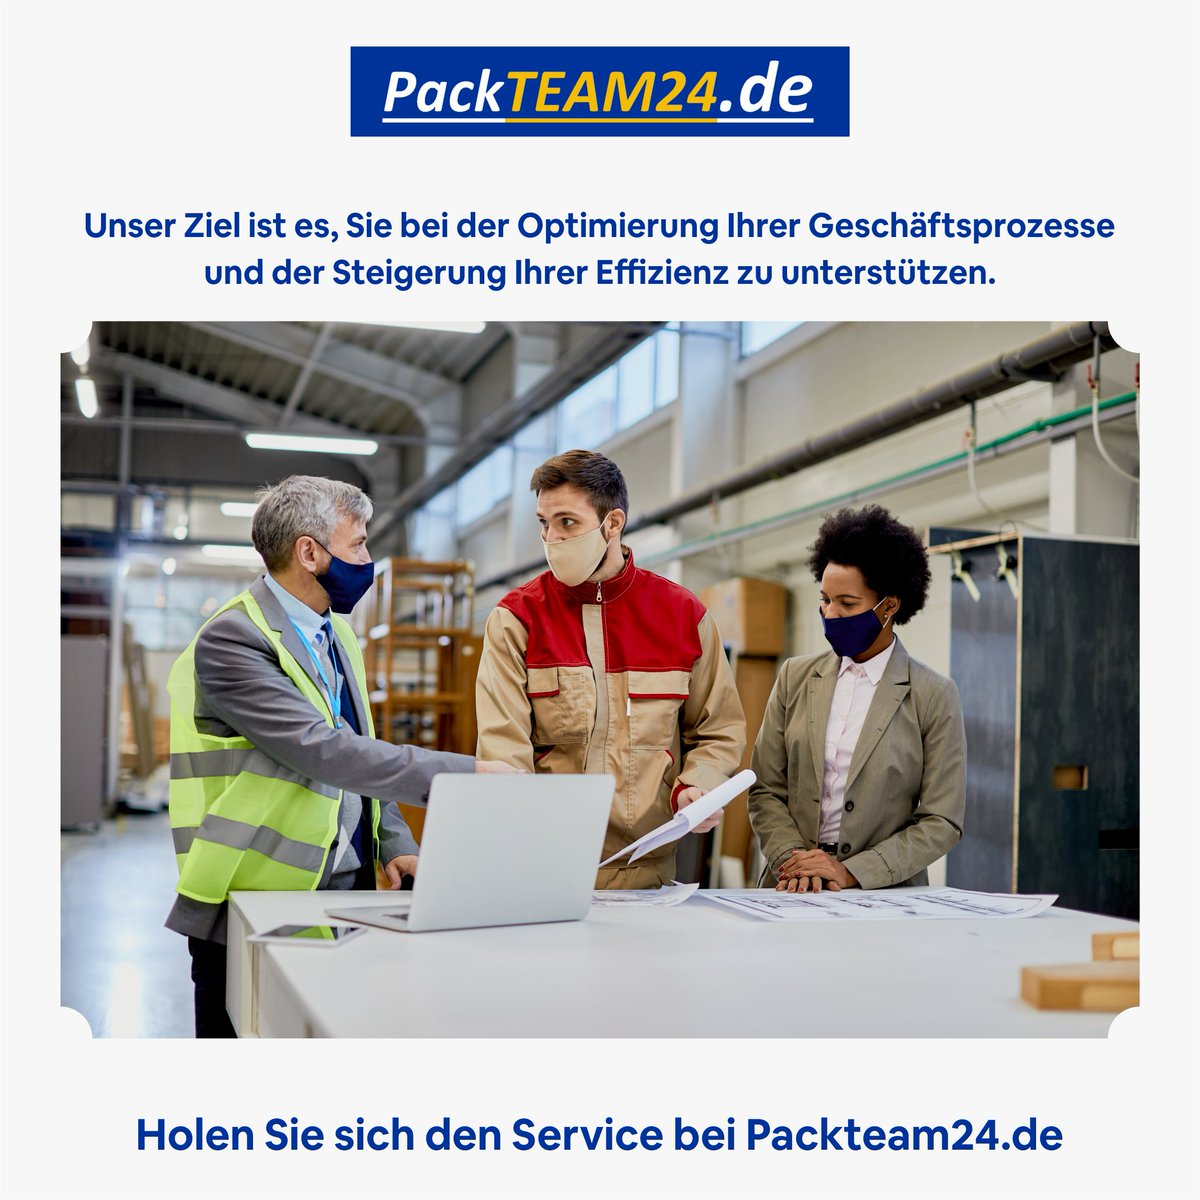 Wir sind die Spezialisten für Personalleasing in Hamburg und wollen Ihnen helfen, qualifizierte Mitarbeiter für Ihren Bedarf zu finden

Holen Sie sich die Dienstleistungsvorteile bei Packteam24.de

#beladung #packteam24 #fahrzeuge #container #umzug #transporte #germany